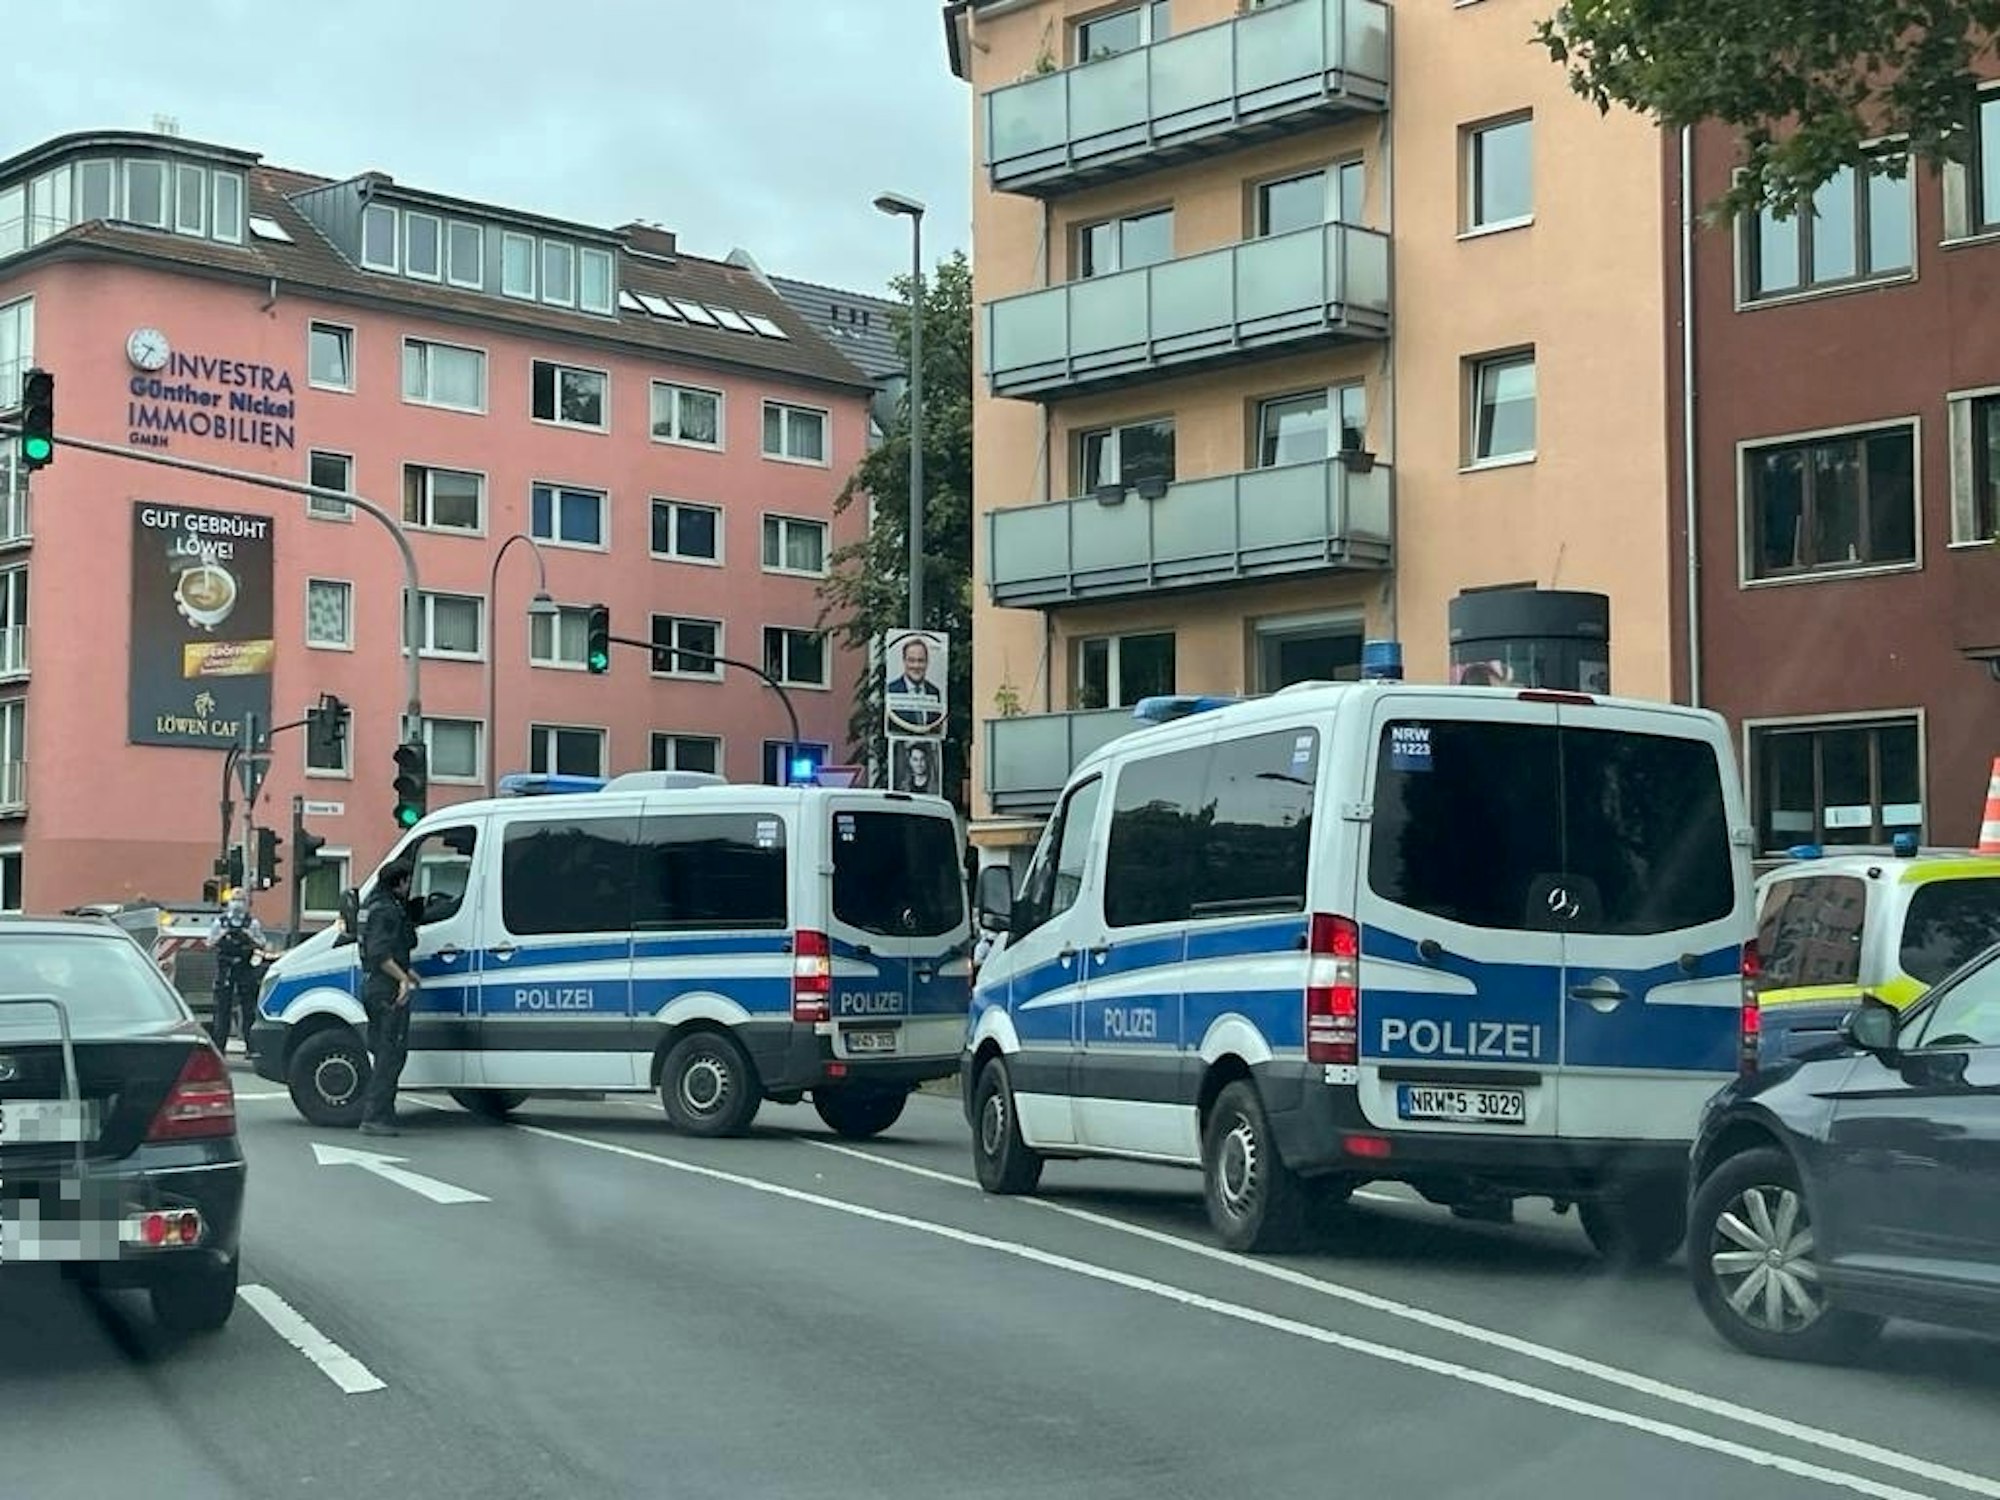 Polizeiwagen stehen an der Universitätsstraße in Köln-Lindenthal